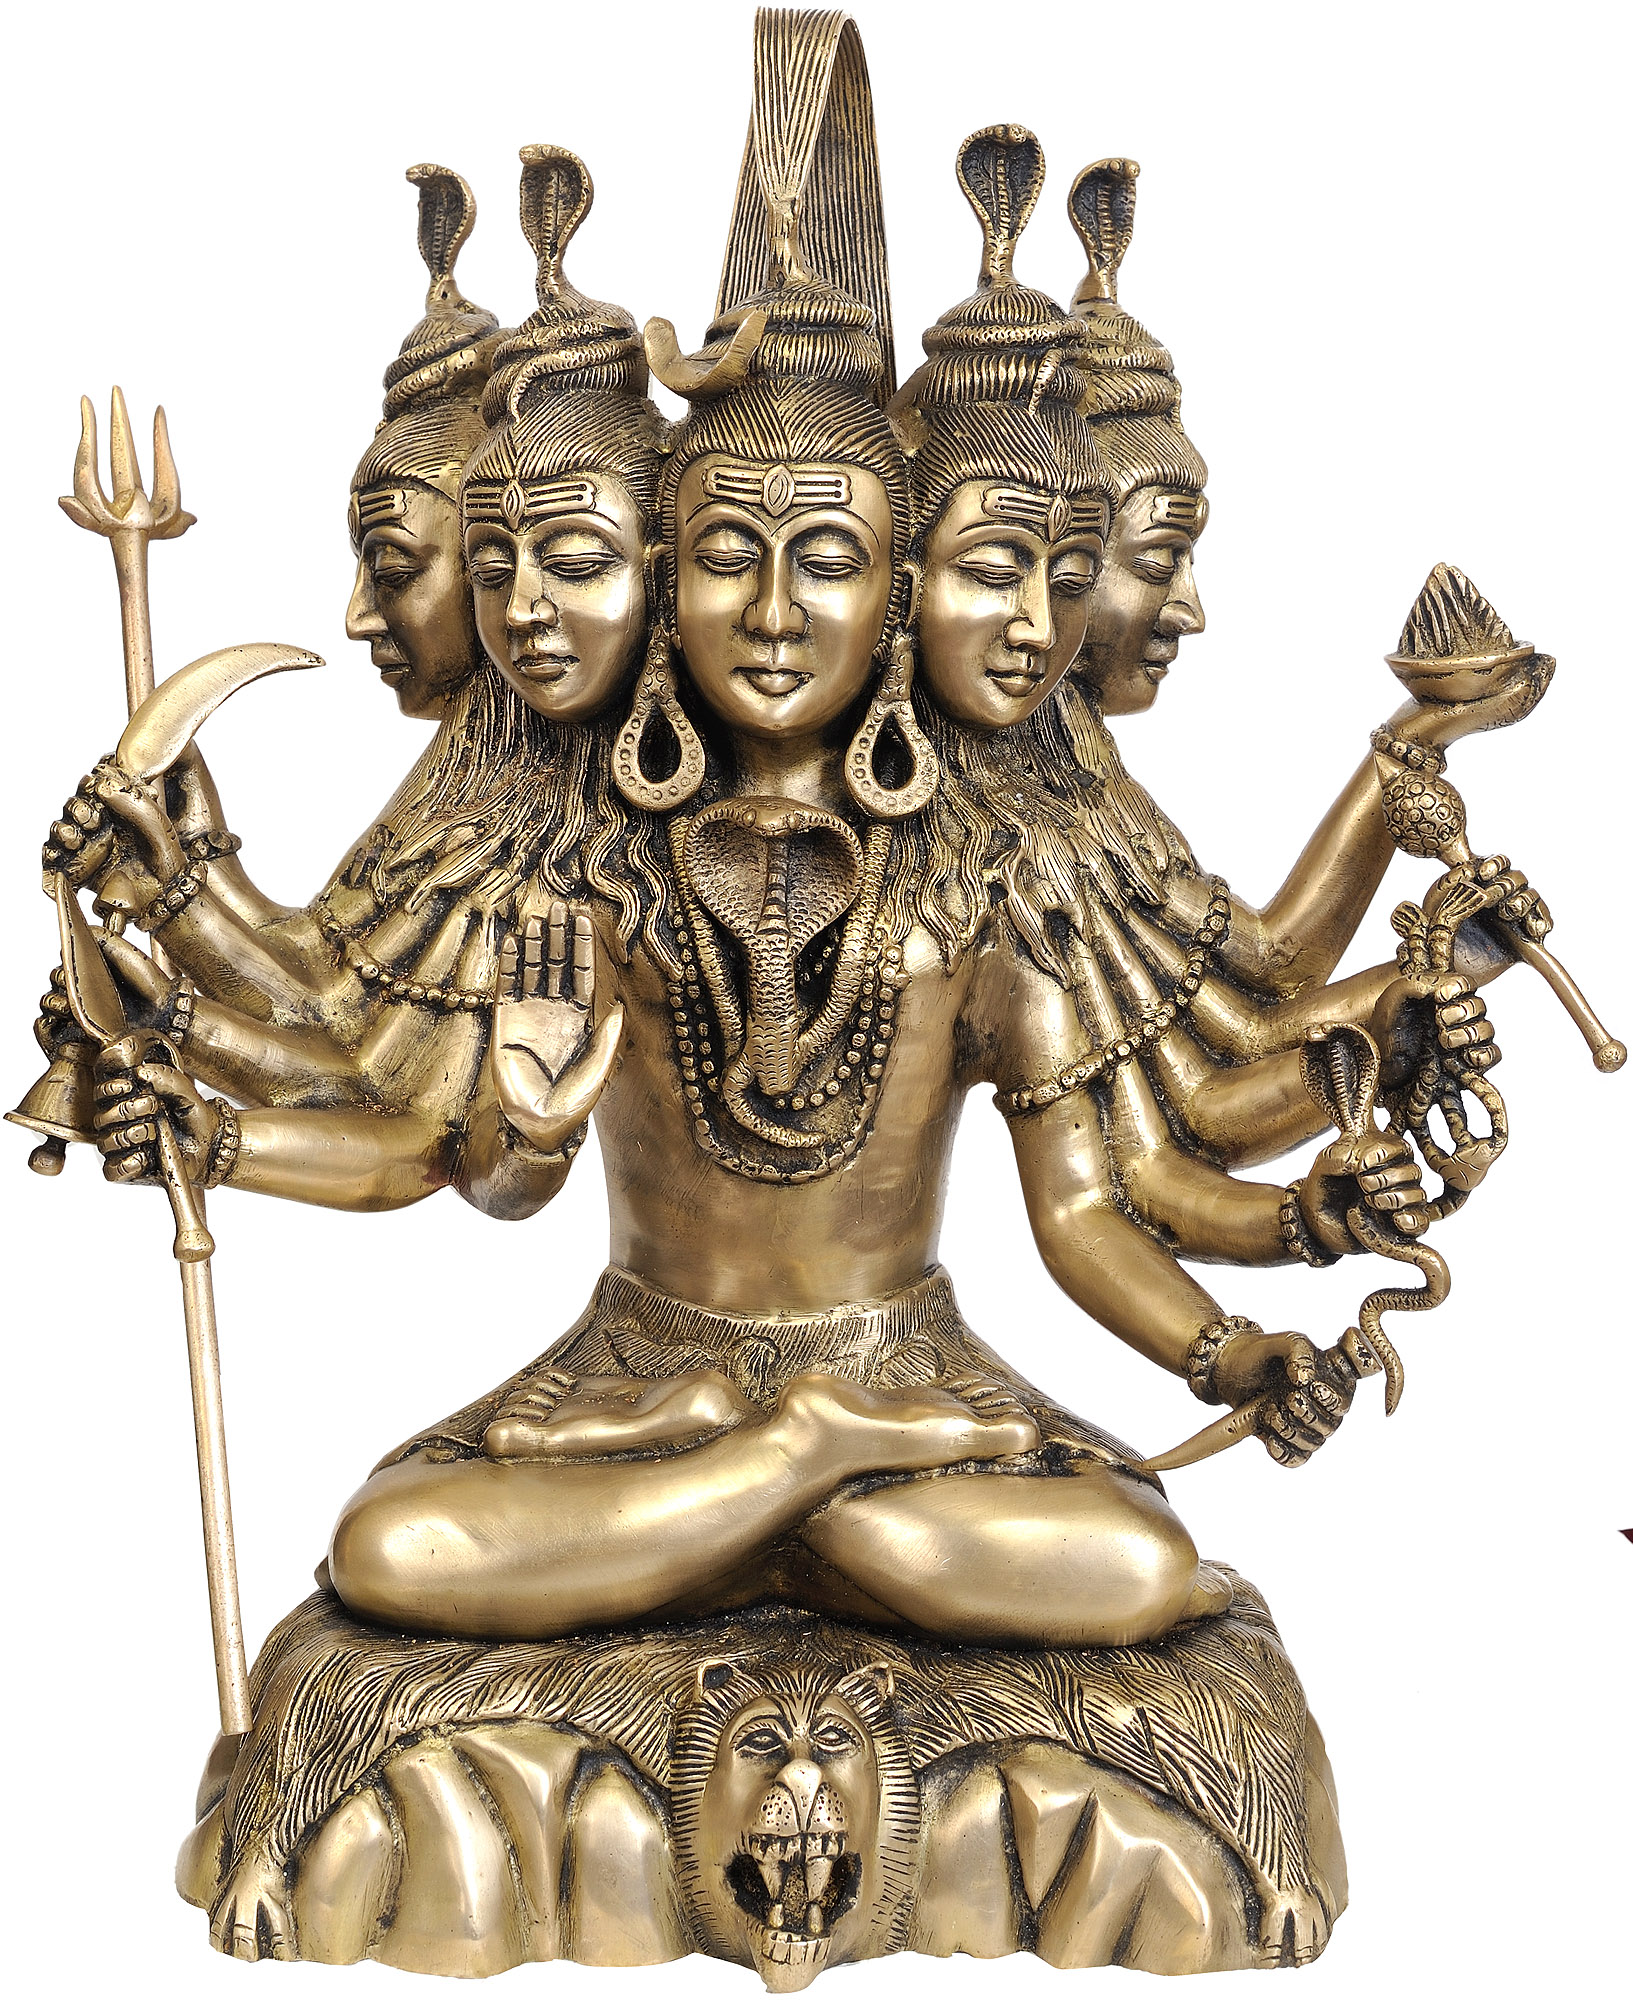 Five-Headed Shiva (Sadashiva)